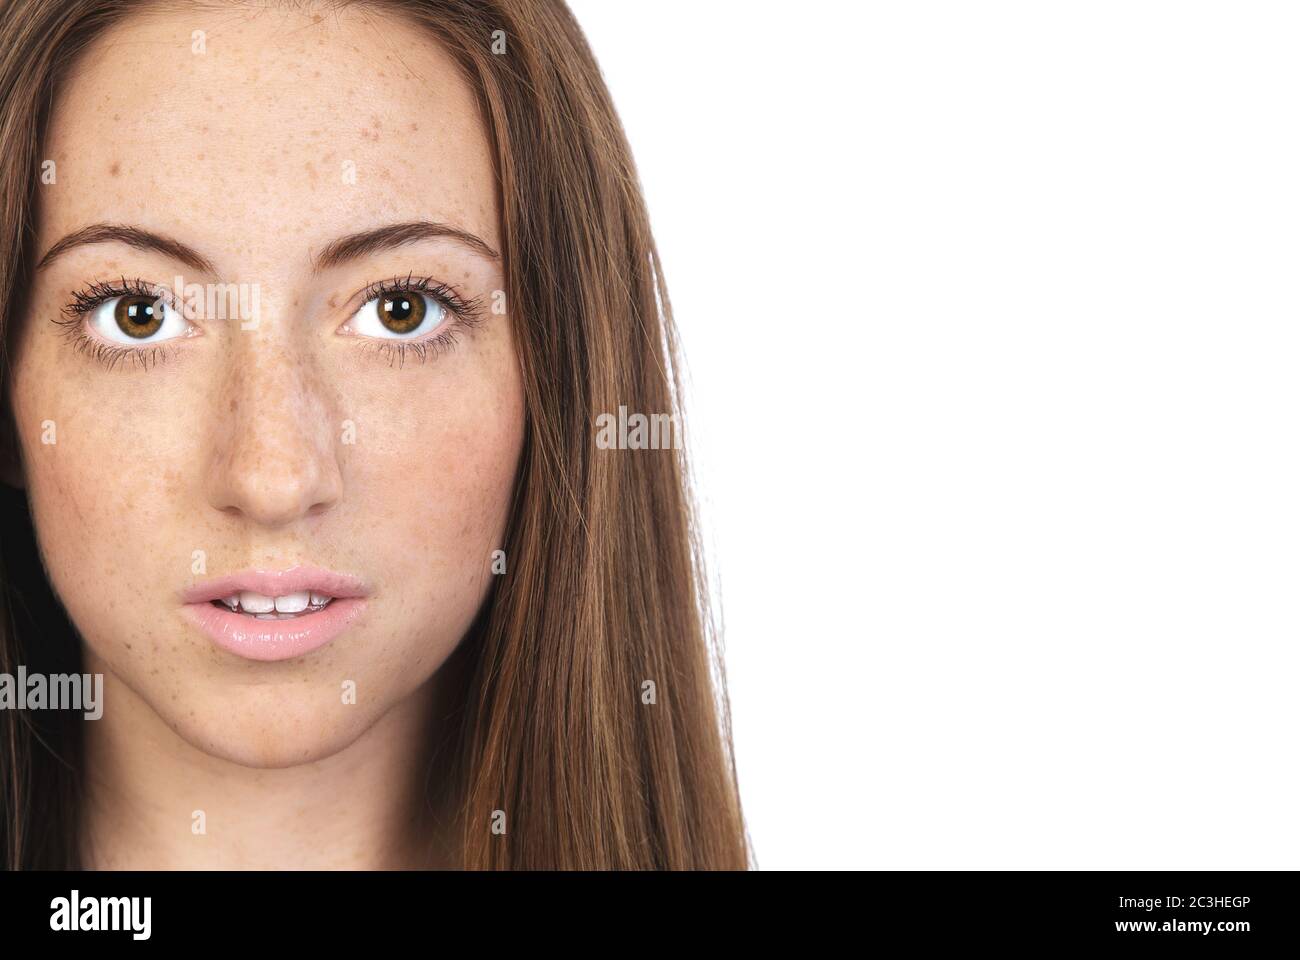 Ein Porträt einer jungen, frisch gesichtigen Frau mit Sommersprossen. Natürliches Schönheitskonzept mit Platz für Ihren Text Stockfoto